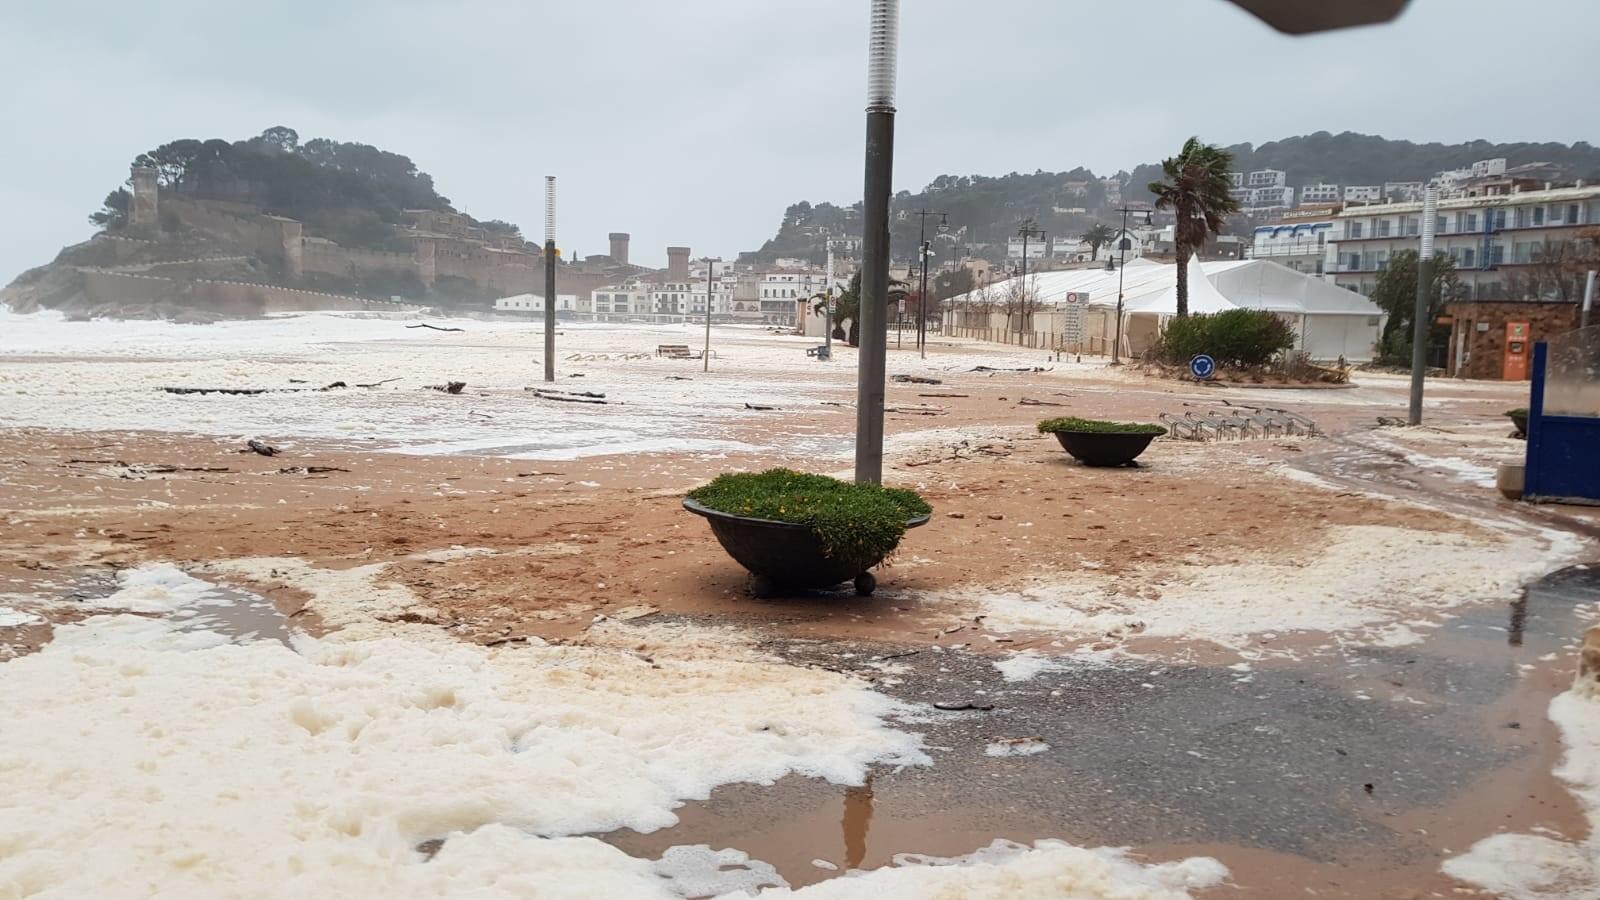  Inundaciones en Tossa de Mar (Girona) por el temporal 'Gloria'